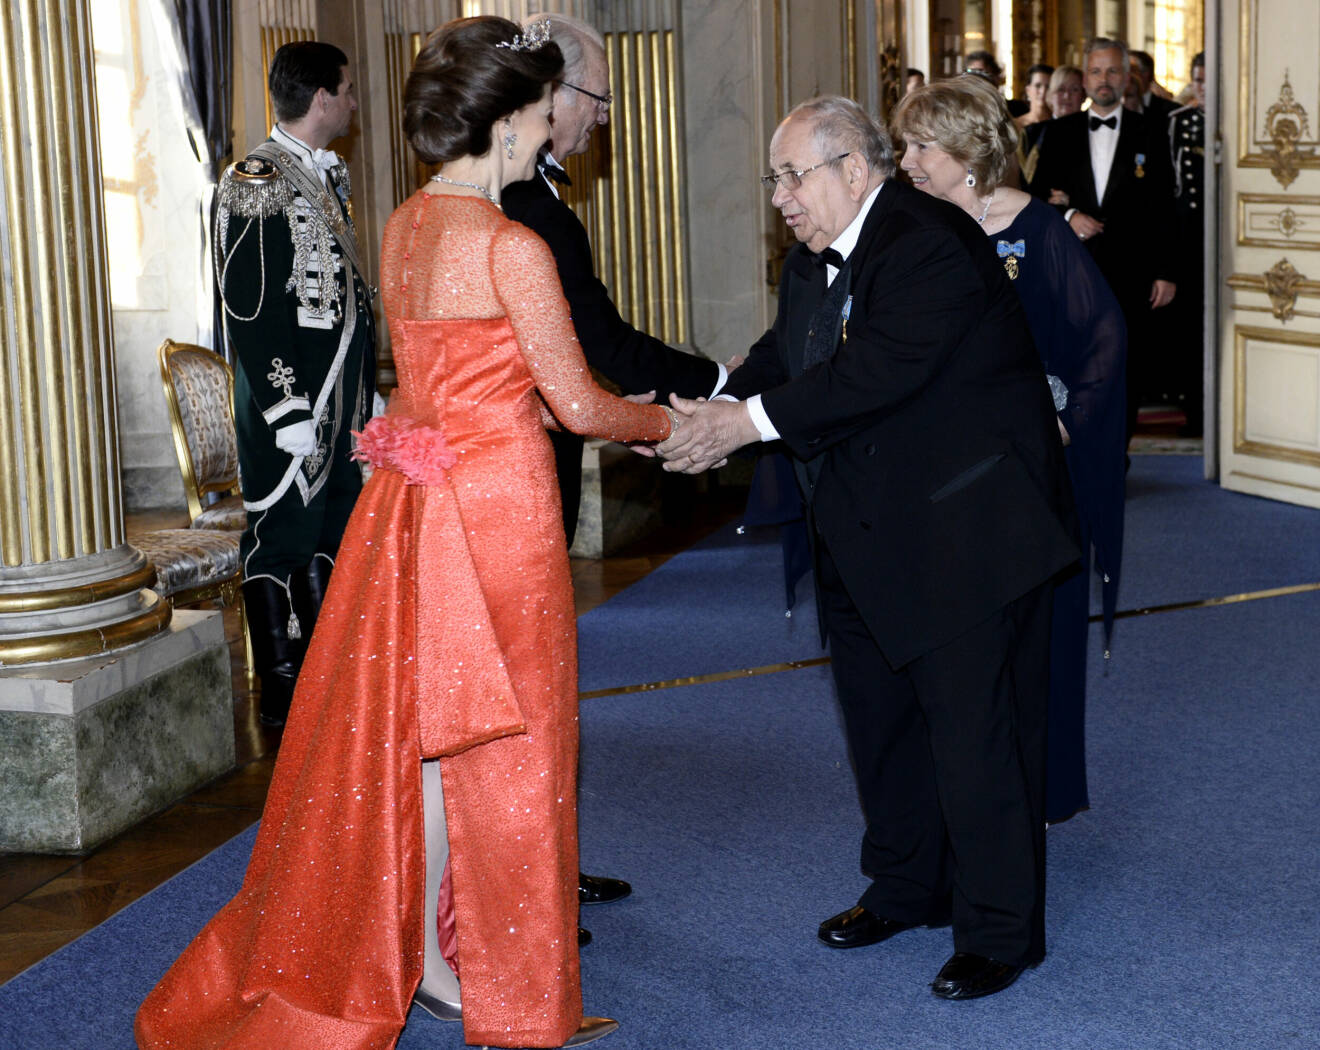 Prinsessan Majda (Margareta) och prins Raad hälsar på kungaparet på kungens 70-årsfest 2016